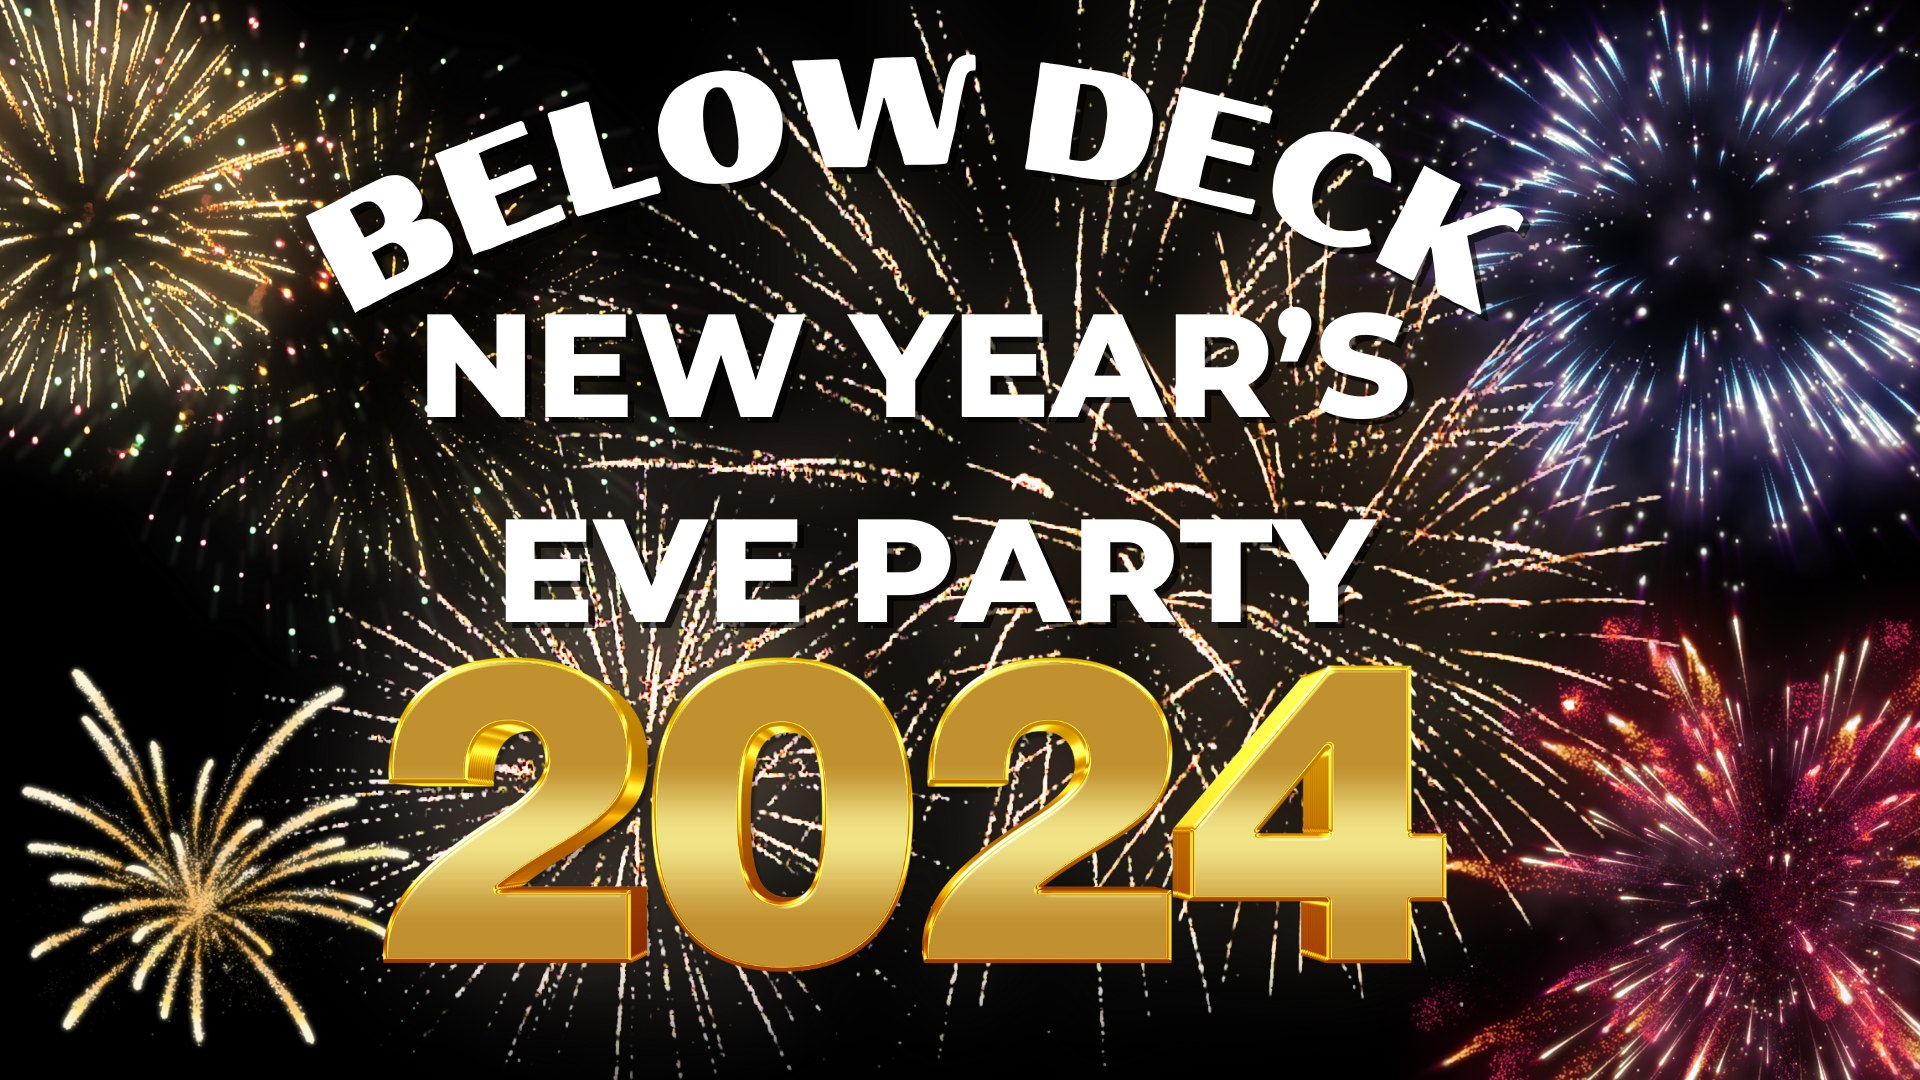 New Year's Eve Below Deck (WatersView Restaurant) The Warrenist